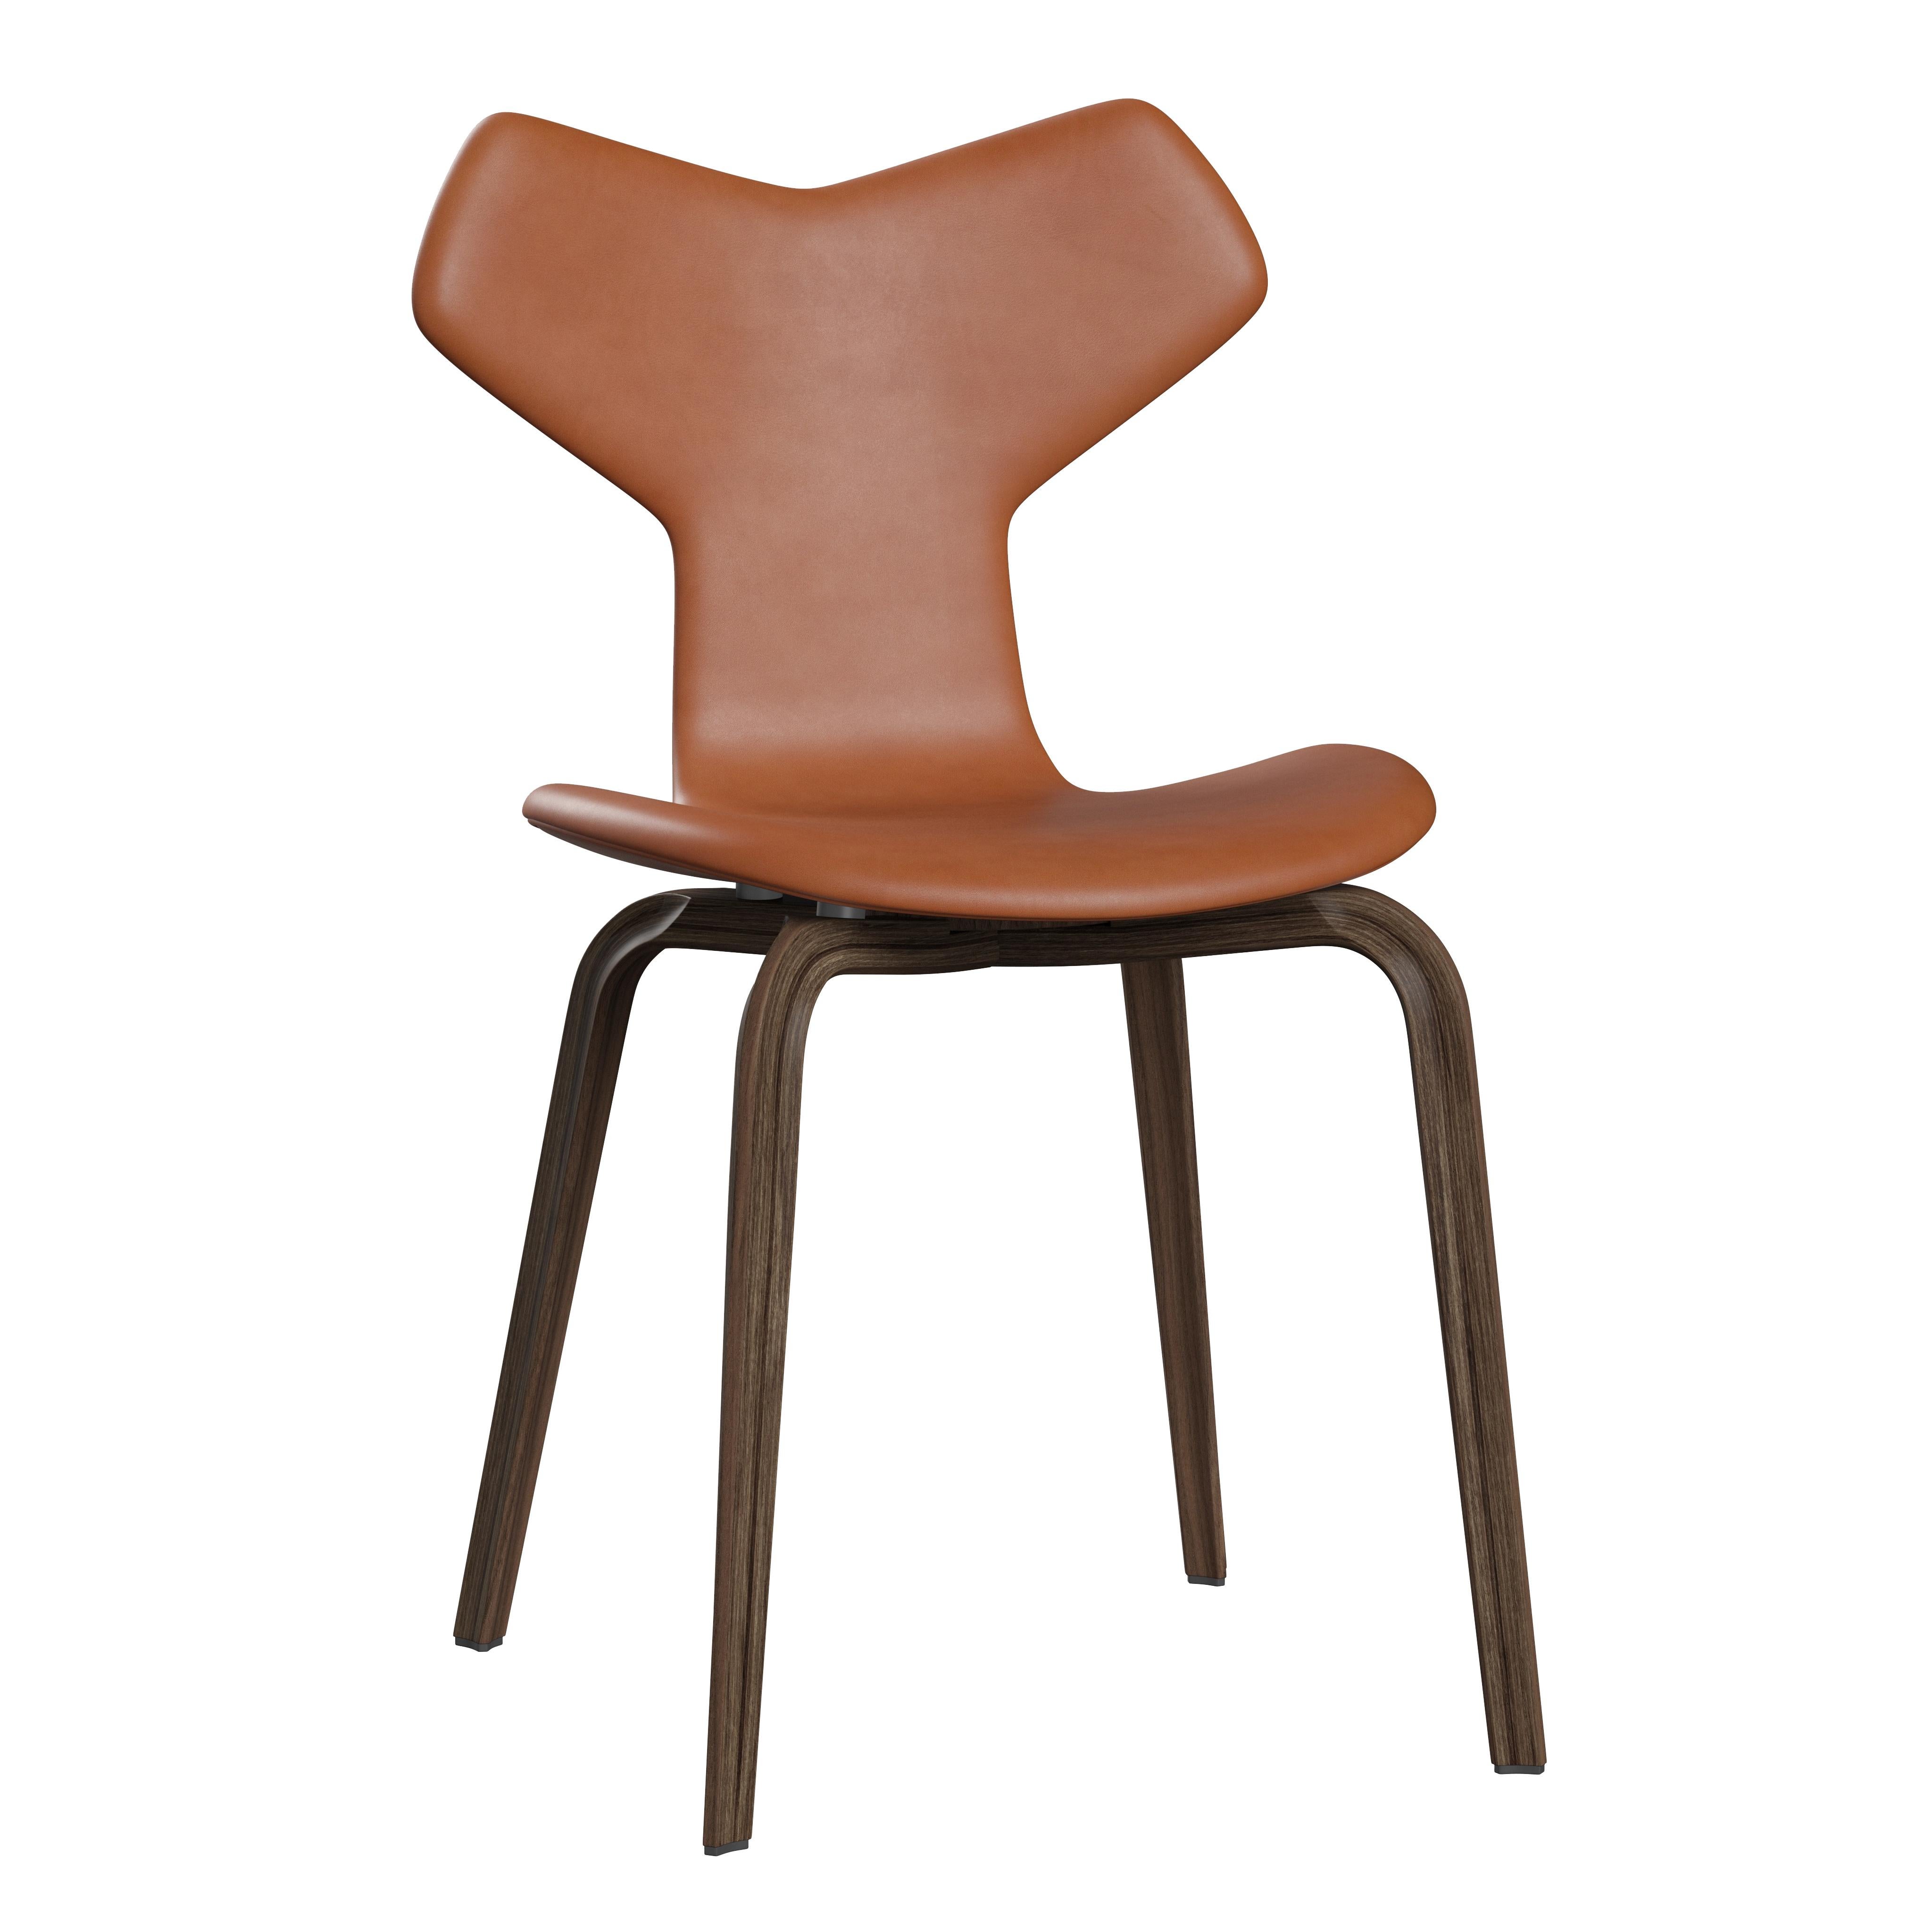 Arne Jacobsen 'Grand Prix' Stuhl für Fritz Hansen in Volllederpolsterung.
 
Fritz Hansen wurde 1872 gegründet und ist zum Synonym für legendäres dänisches Design geworden. Die Marke kombiniert zeitlose Handwerkskunst mit einem Schwerpunkt auf